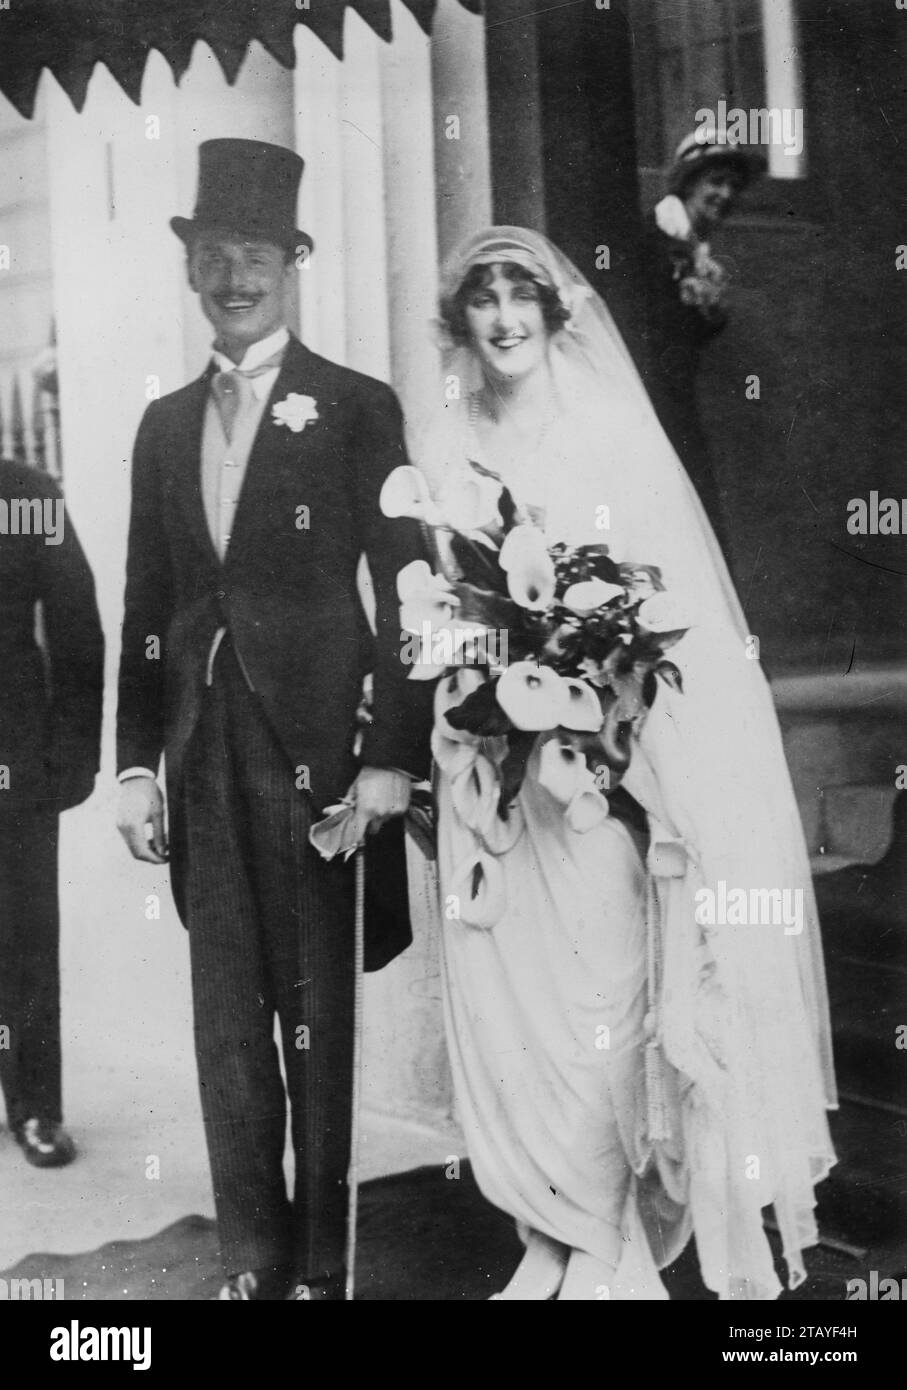 Le député travailliste et fondateur de l'Union britannique des fascistes Sir Oswald Mosely avec sa première épouse Cynthia Curzon le jour de leur mariage. Banque D'Images